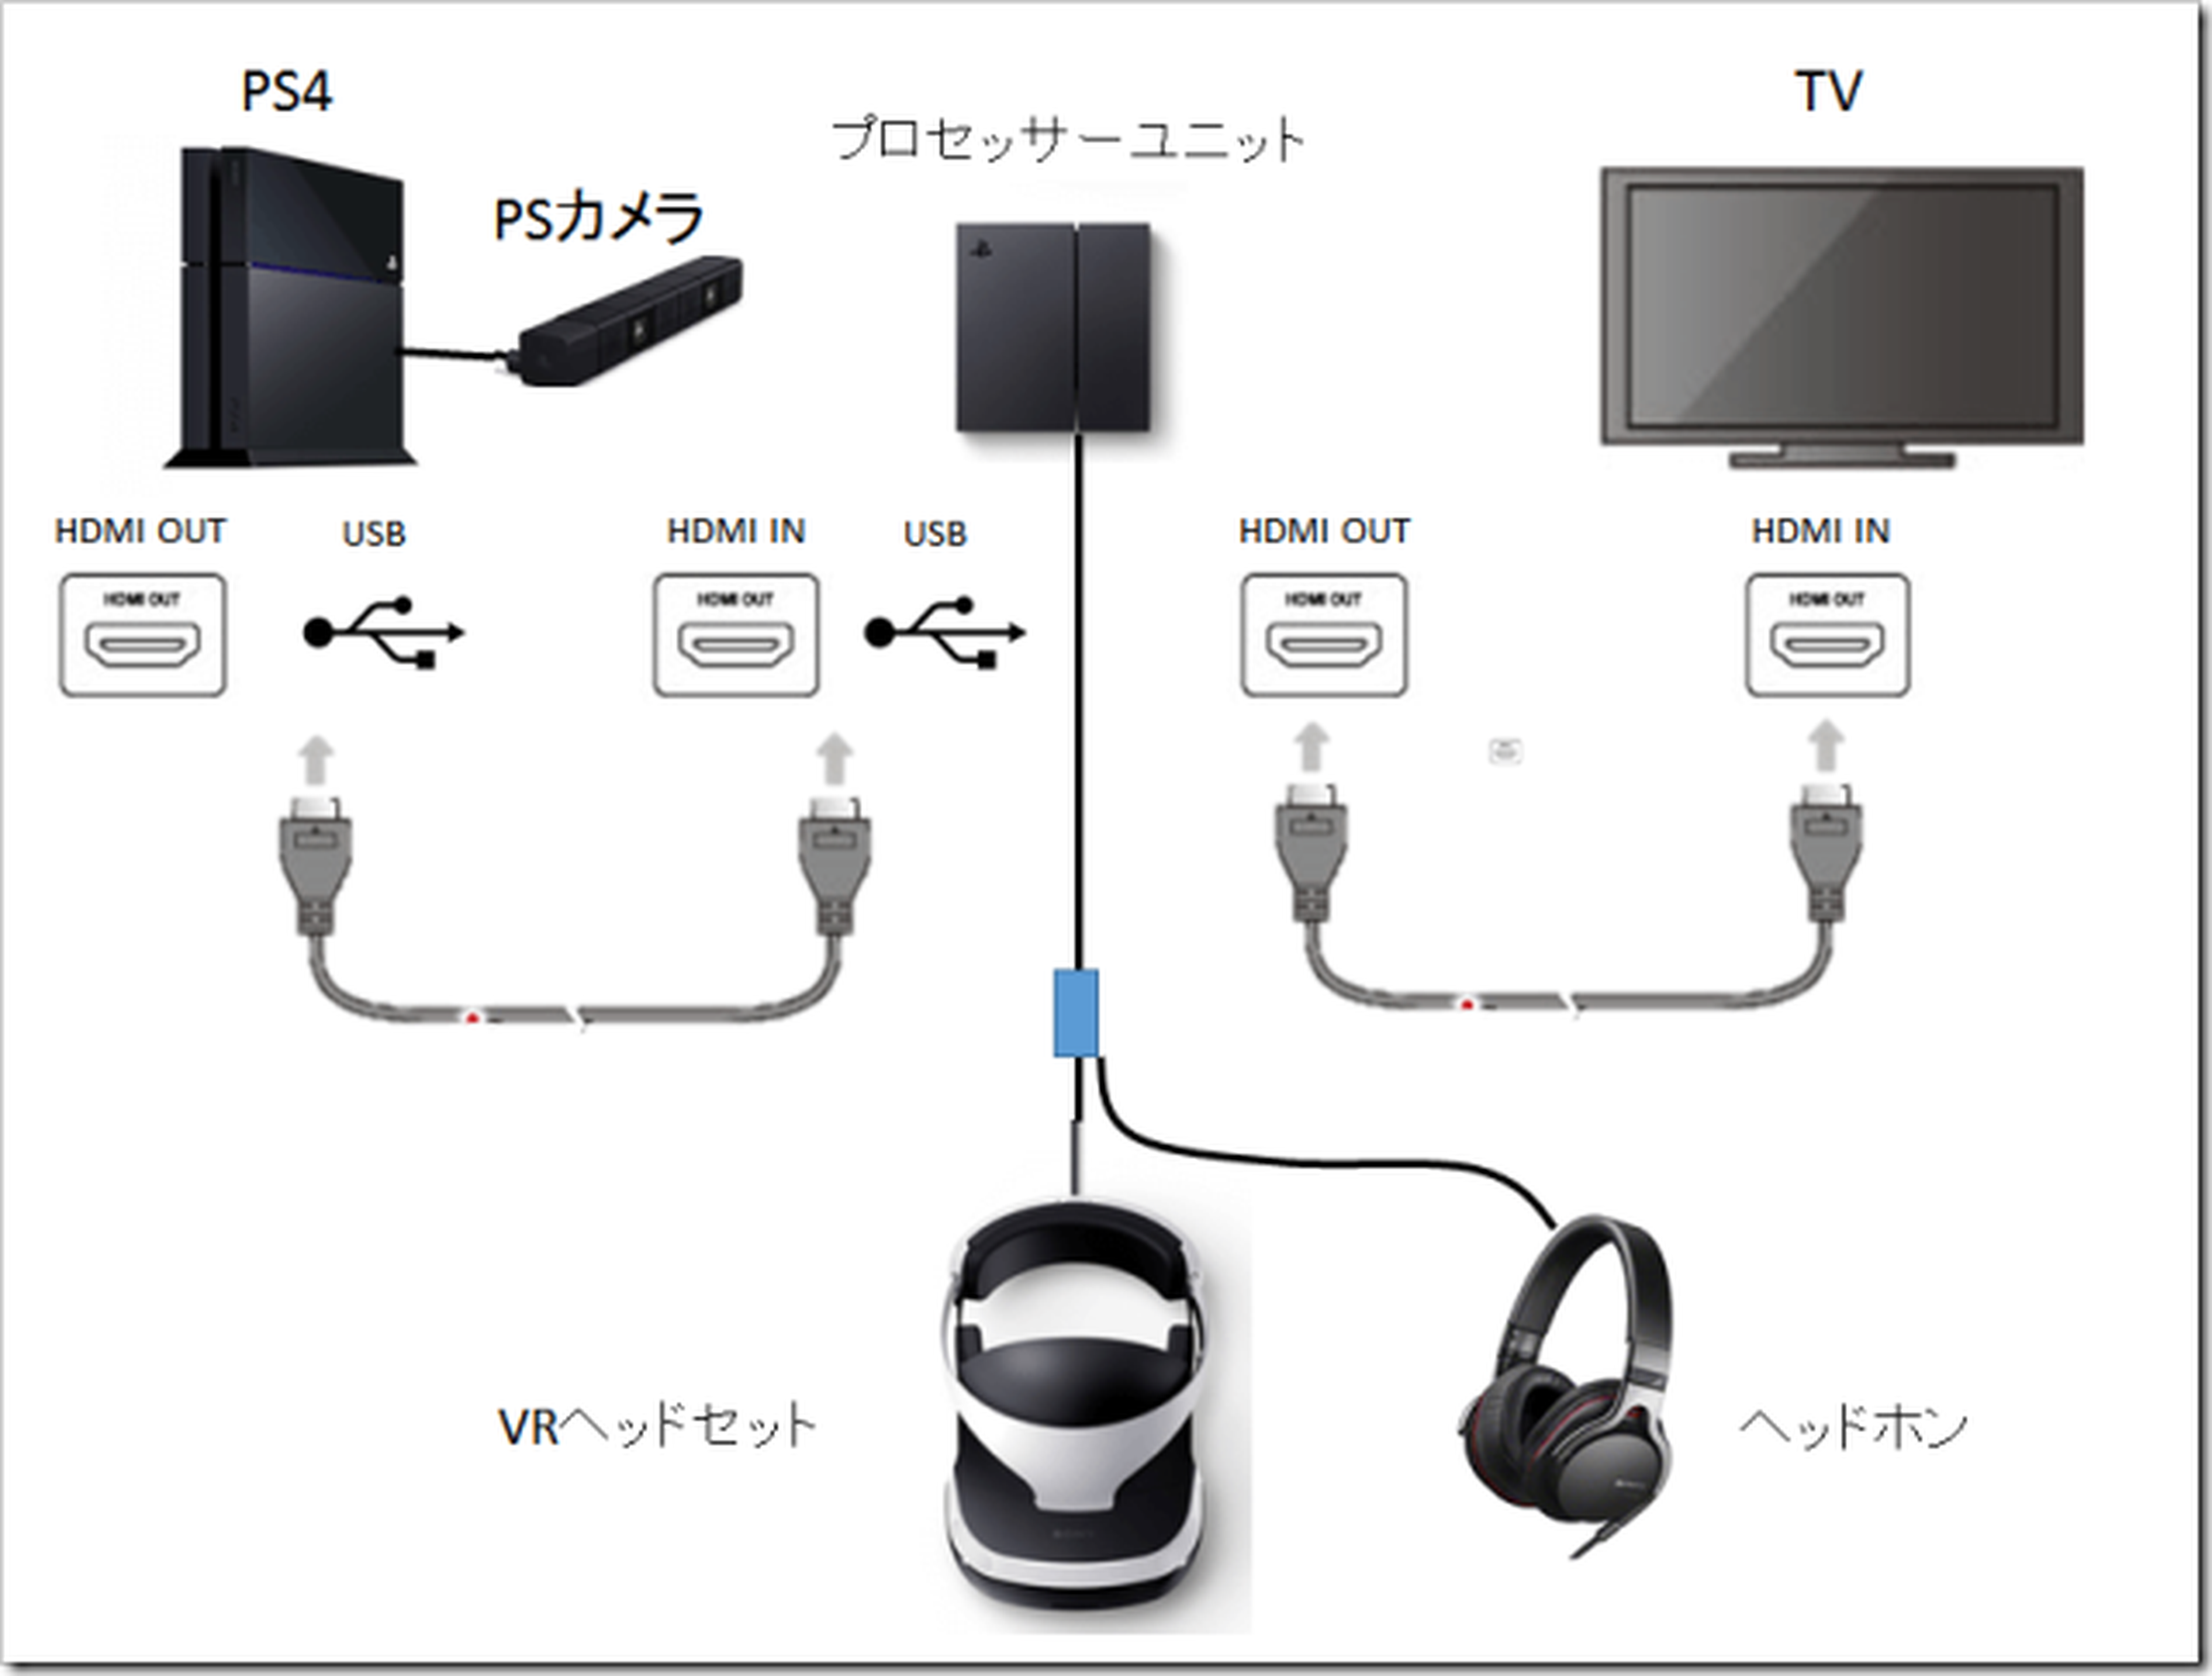 Gafas de realidad virtual Sony PlayStation VR para consola y PC